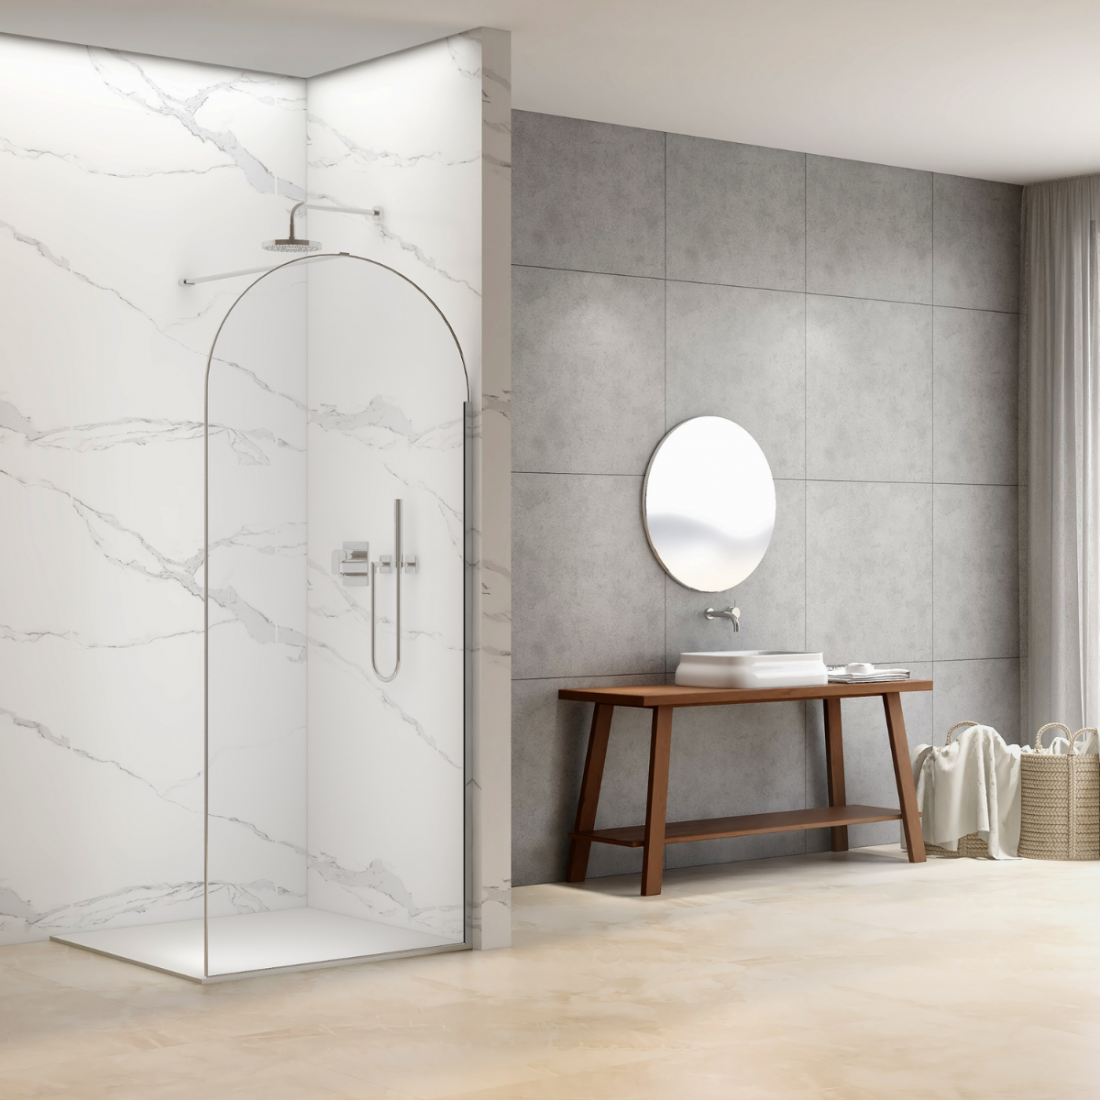 Descubre Mampara ducha redonda fija para transformar tu hogar en un oasis de estilo y funcionalidad | The Bath 🚿🧼